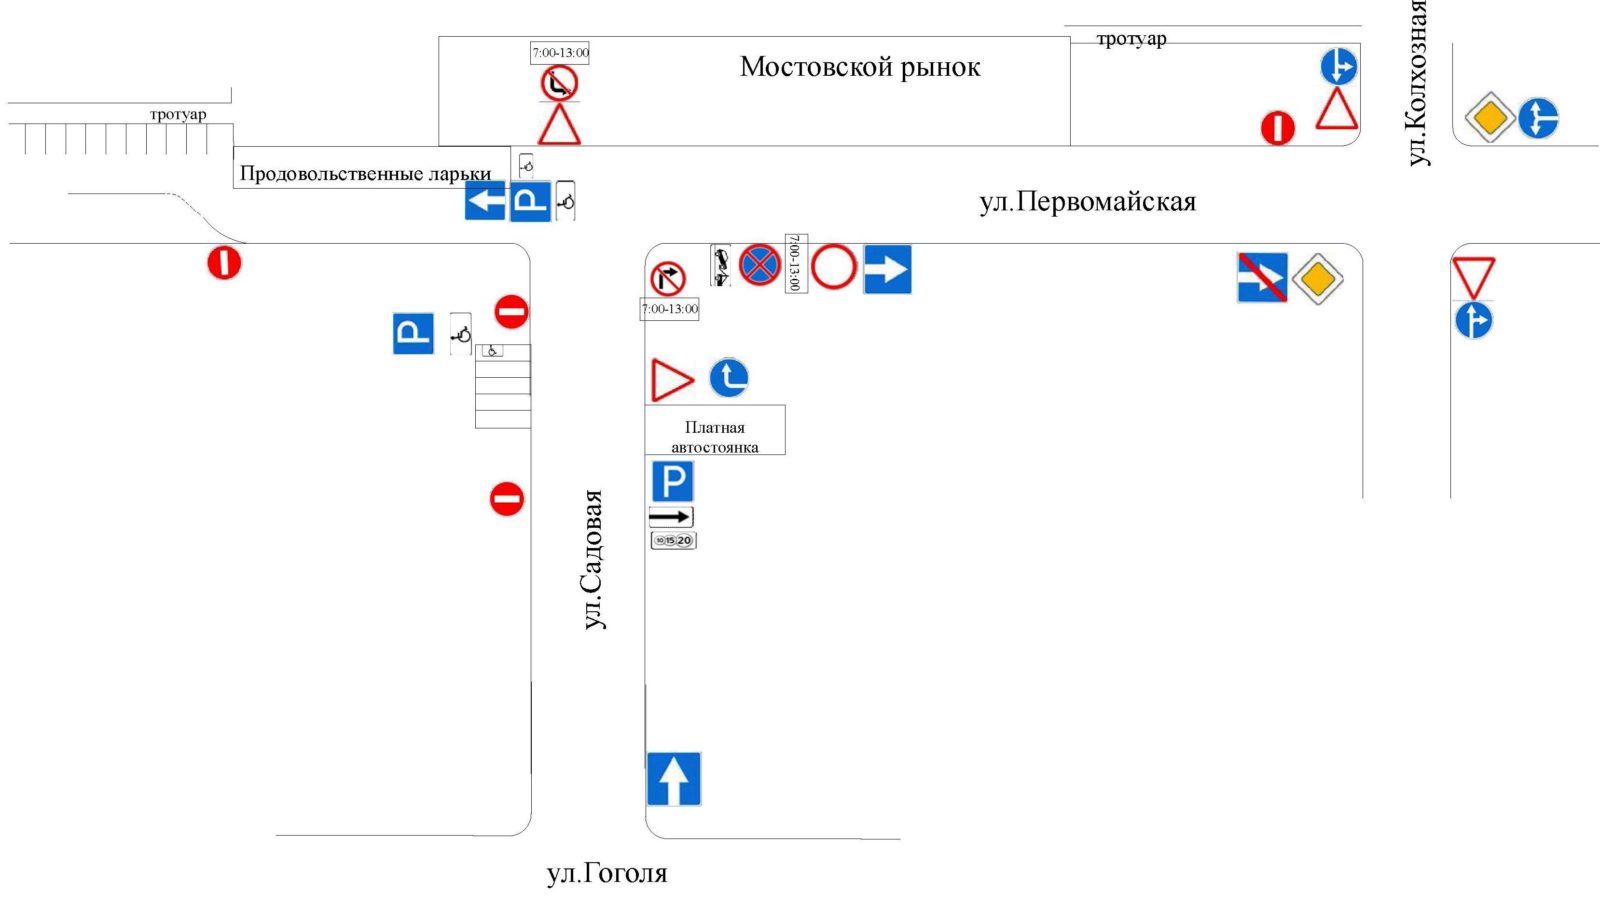 Вниманию автолюбителей! Изменяется схема организации дорожного движения в районе Мостовского рынка 5